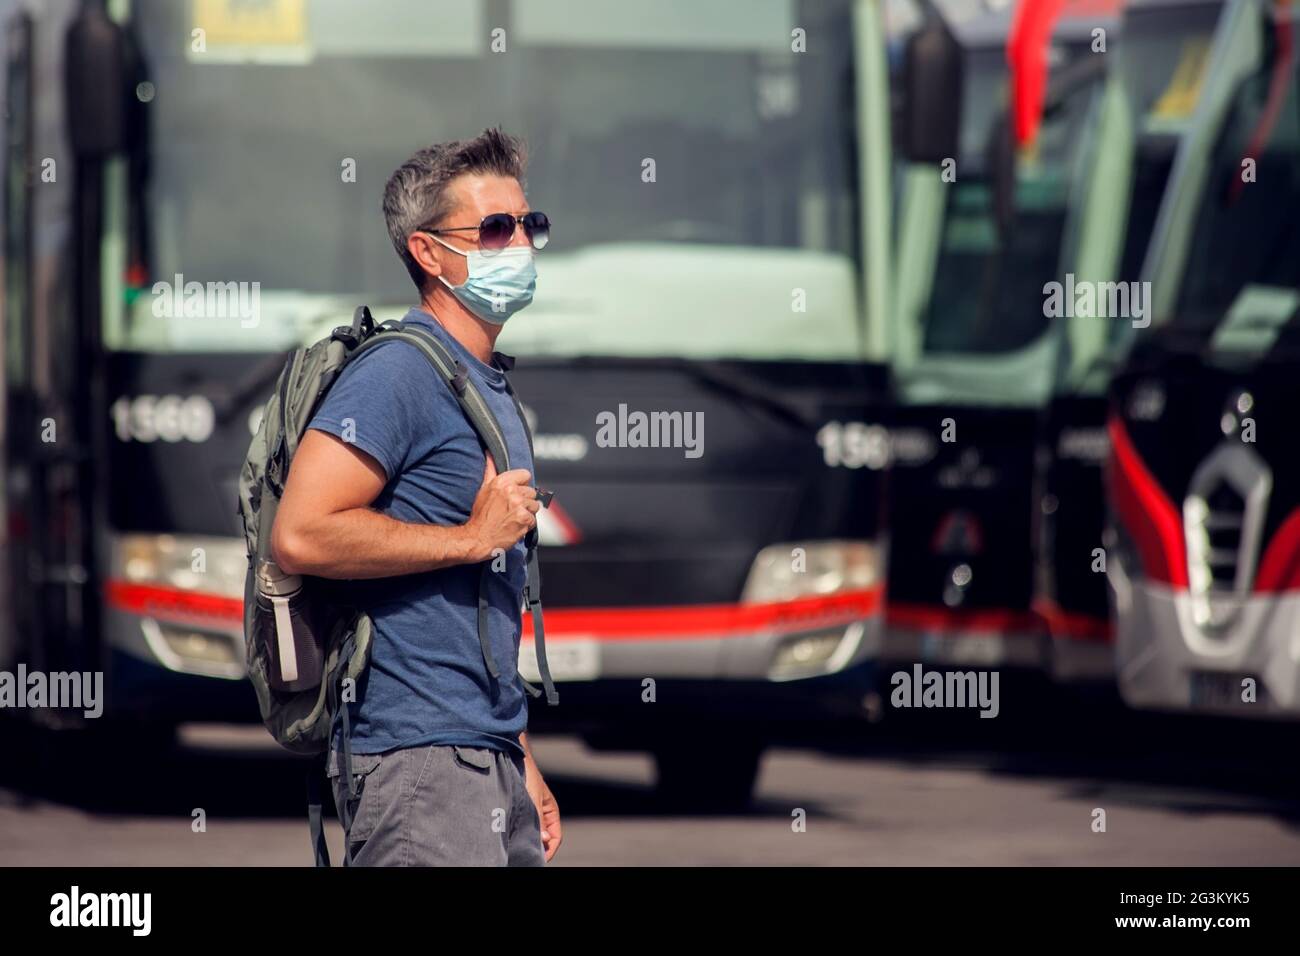 Viajero en la estación de autobuses al aire libre. Hombre con mochila y máscara médica esperando un autobús. Concepto de viajes y turismo Foto de stock